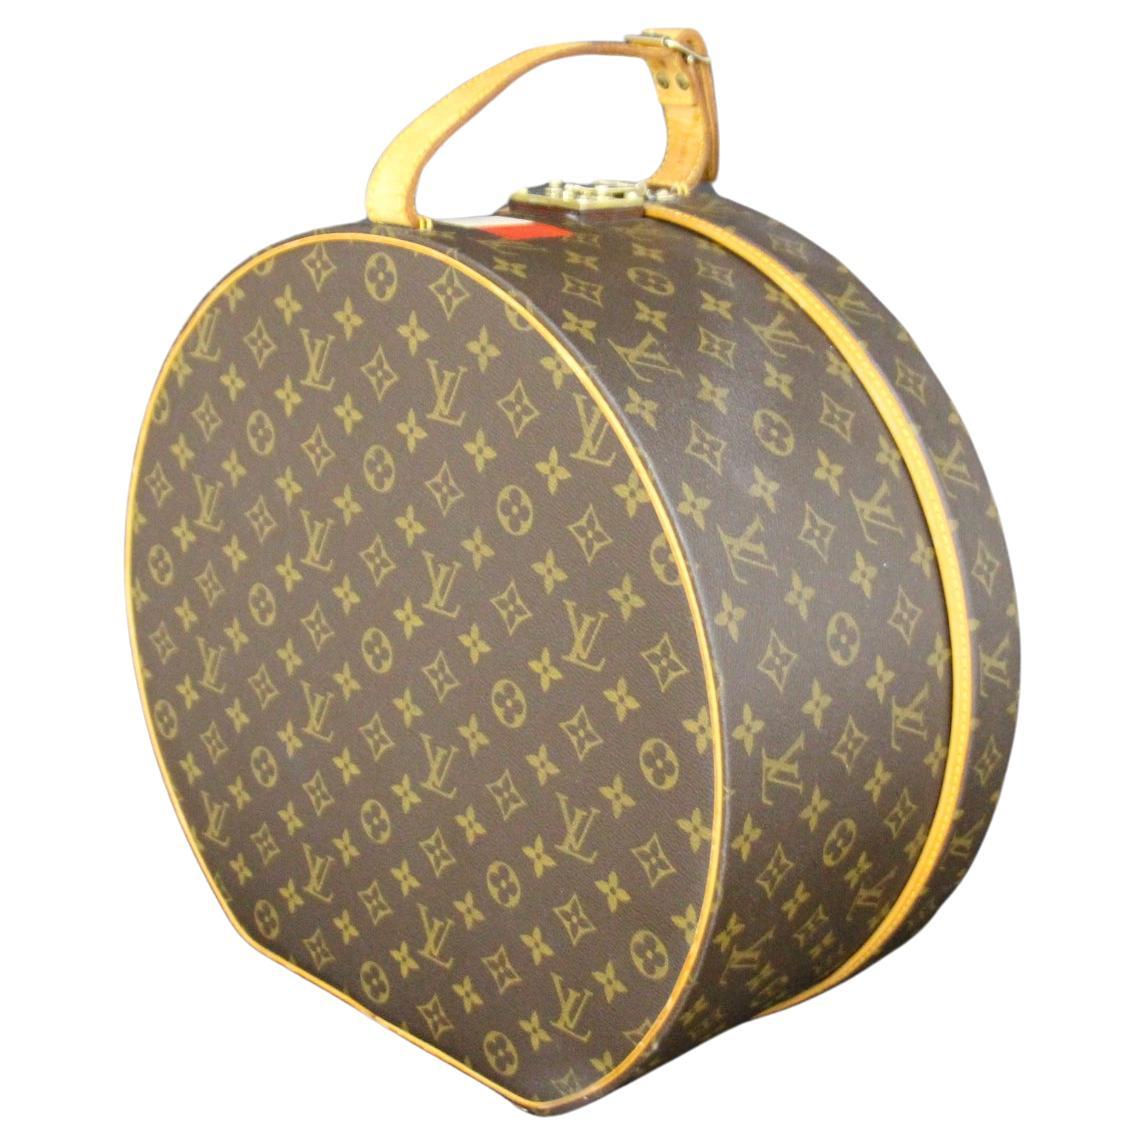 Can you customize a Louis Vuitton bag?